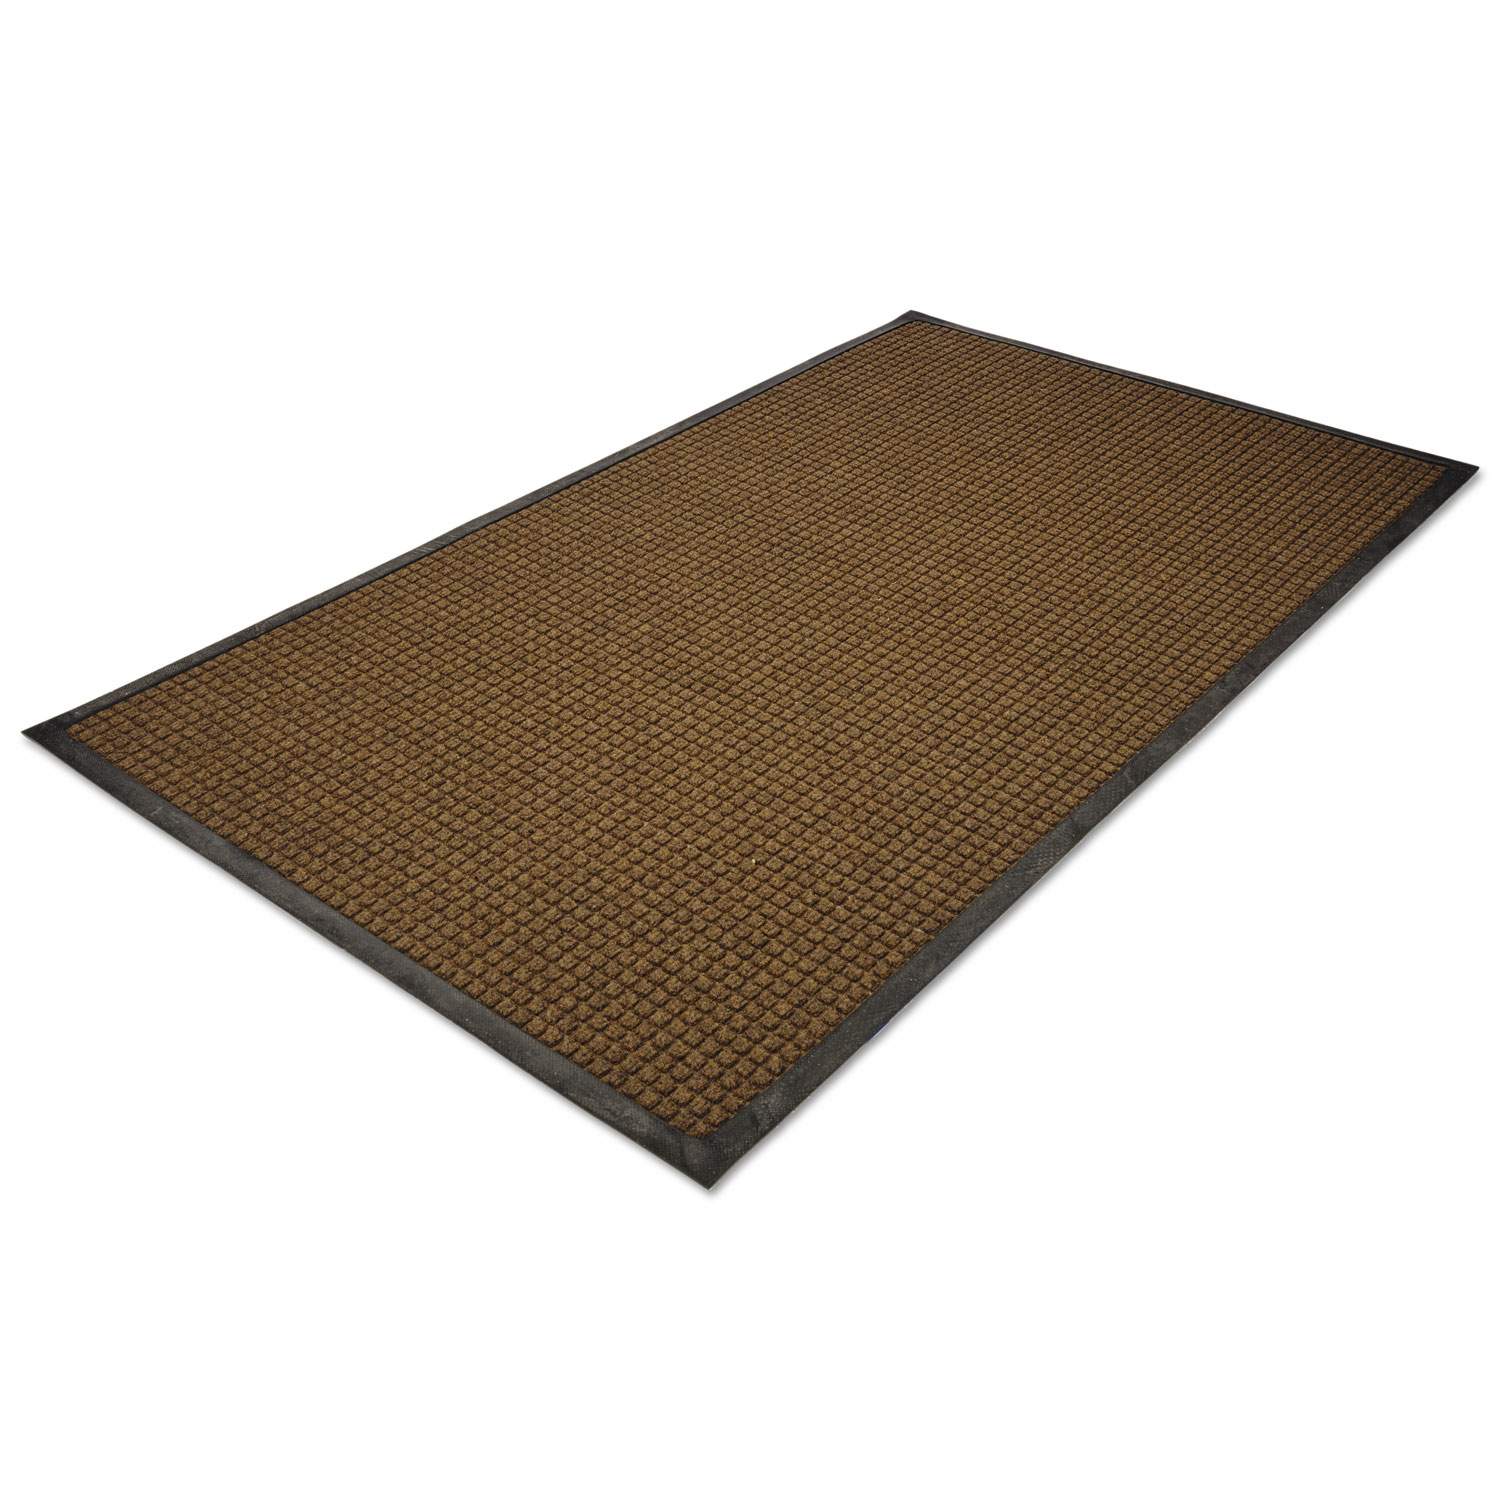  Guardian WG040614 WaterGuard Indoor/Outdoor Scraper Mat, 48 x 72, Brown (MLLWG040614) 